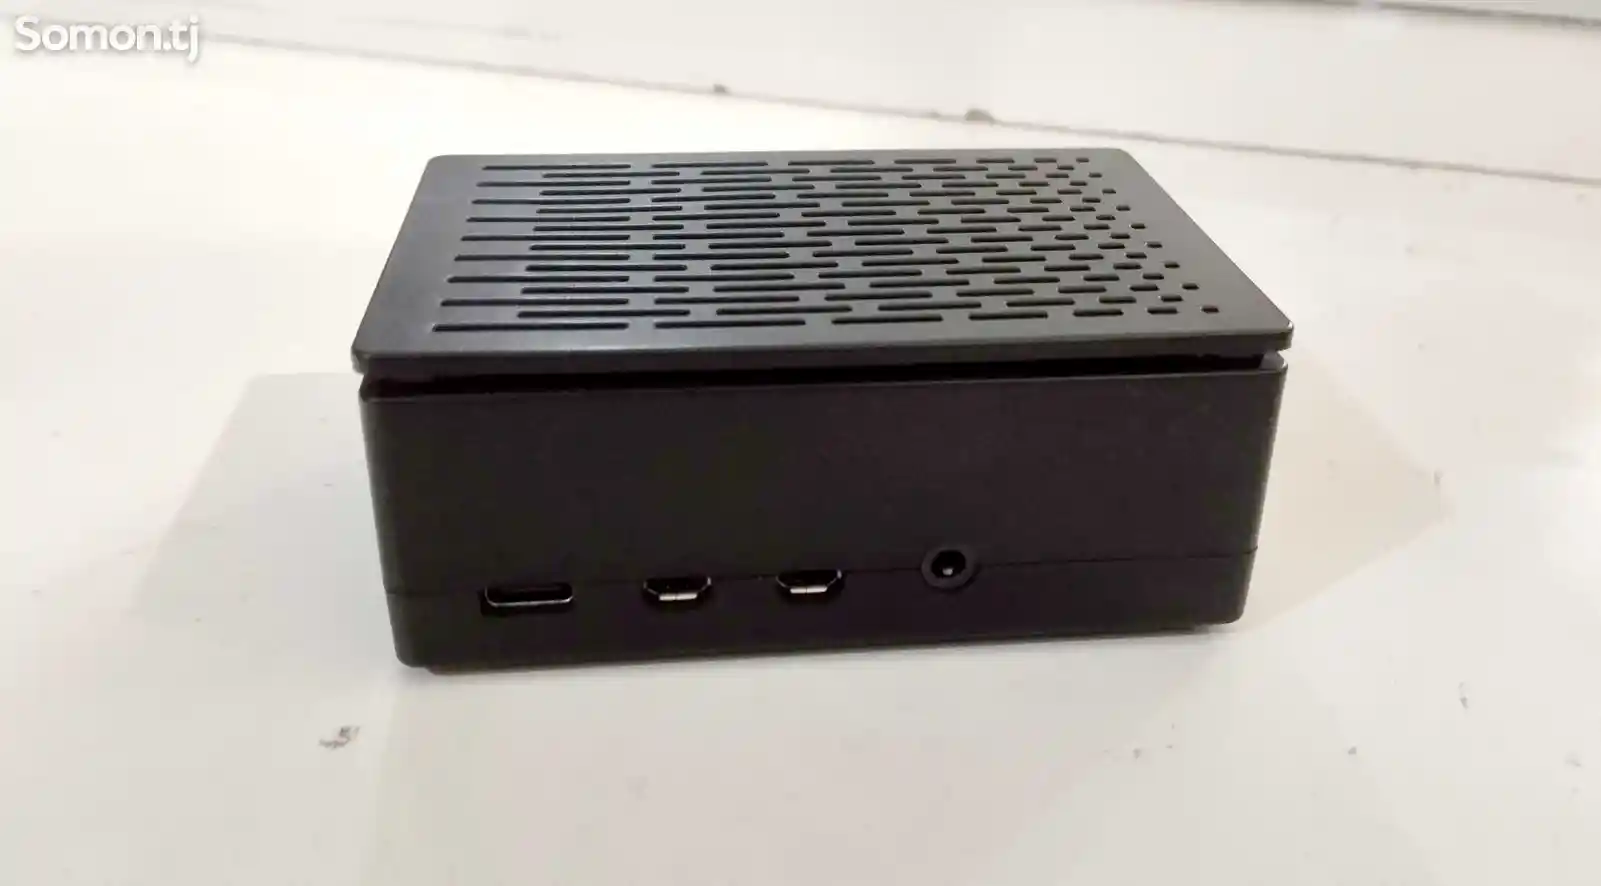 Сервер для умного дома raspberry pi 4 model b-2